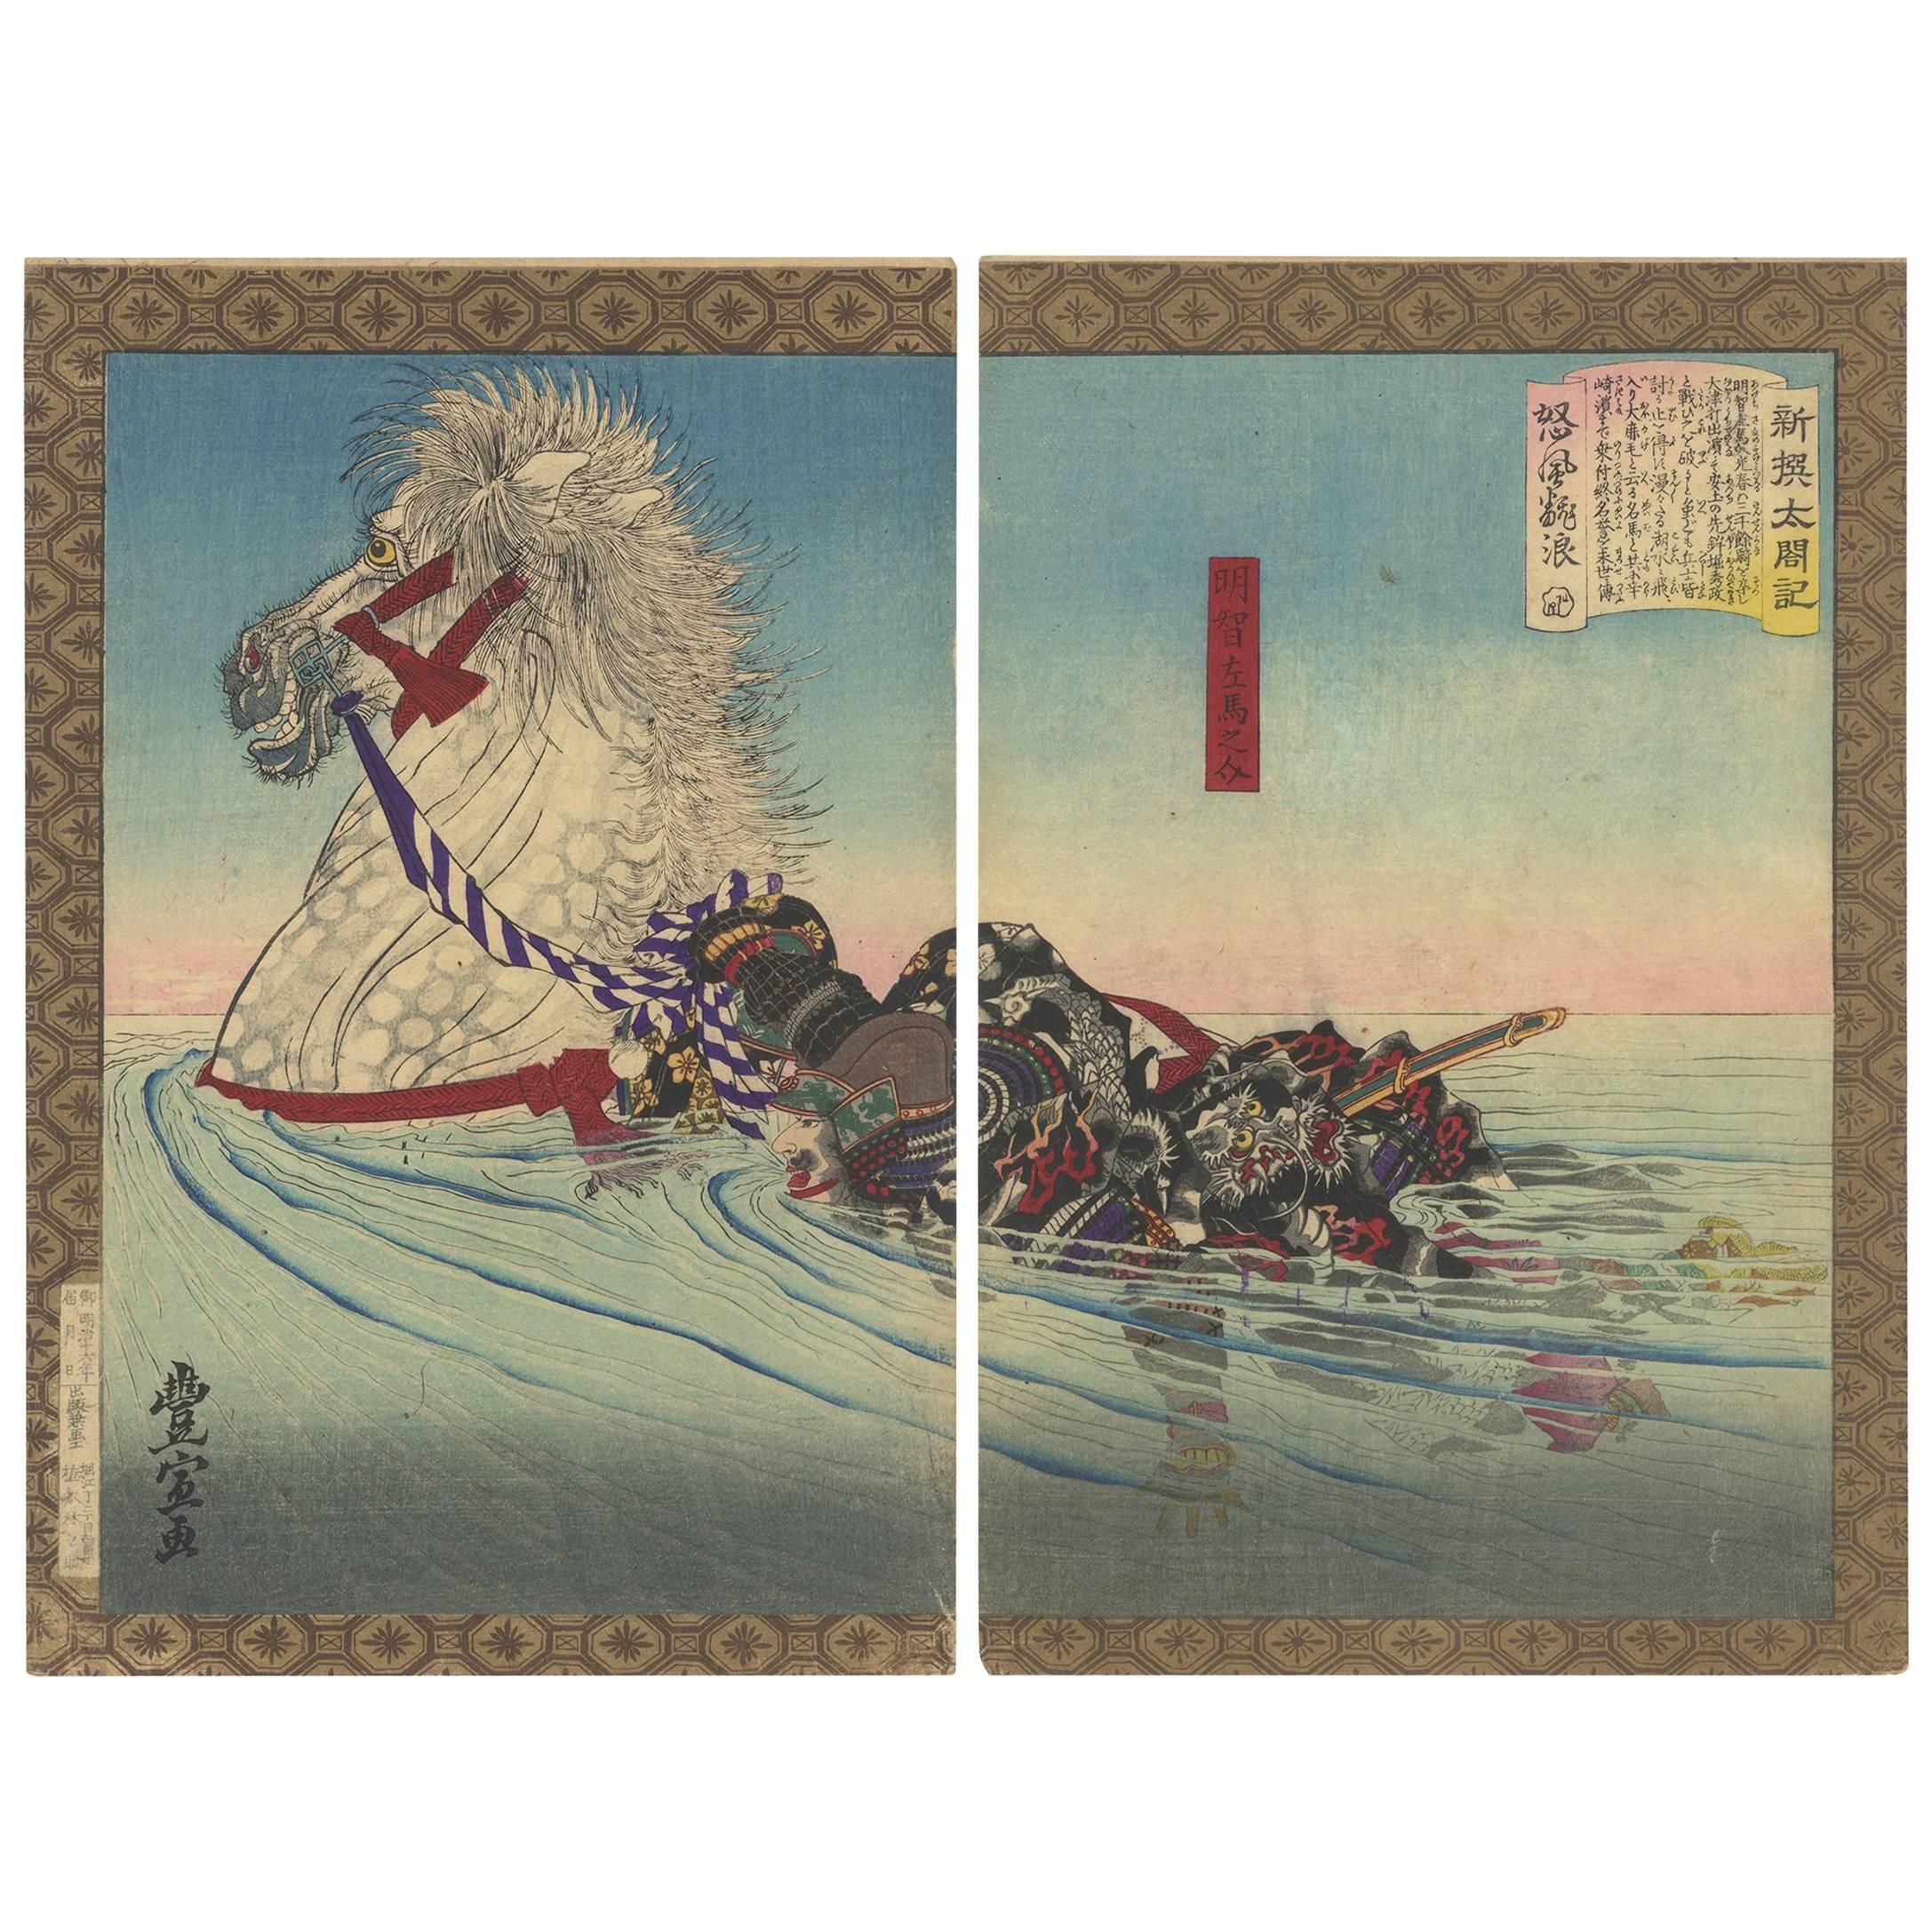 Toyonobu Utagawa, Lord Akechi, Horse, River, Japanese Woodblock Print, Ukiyo-E